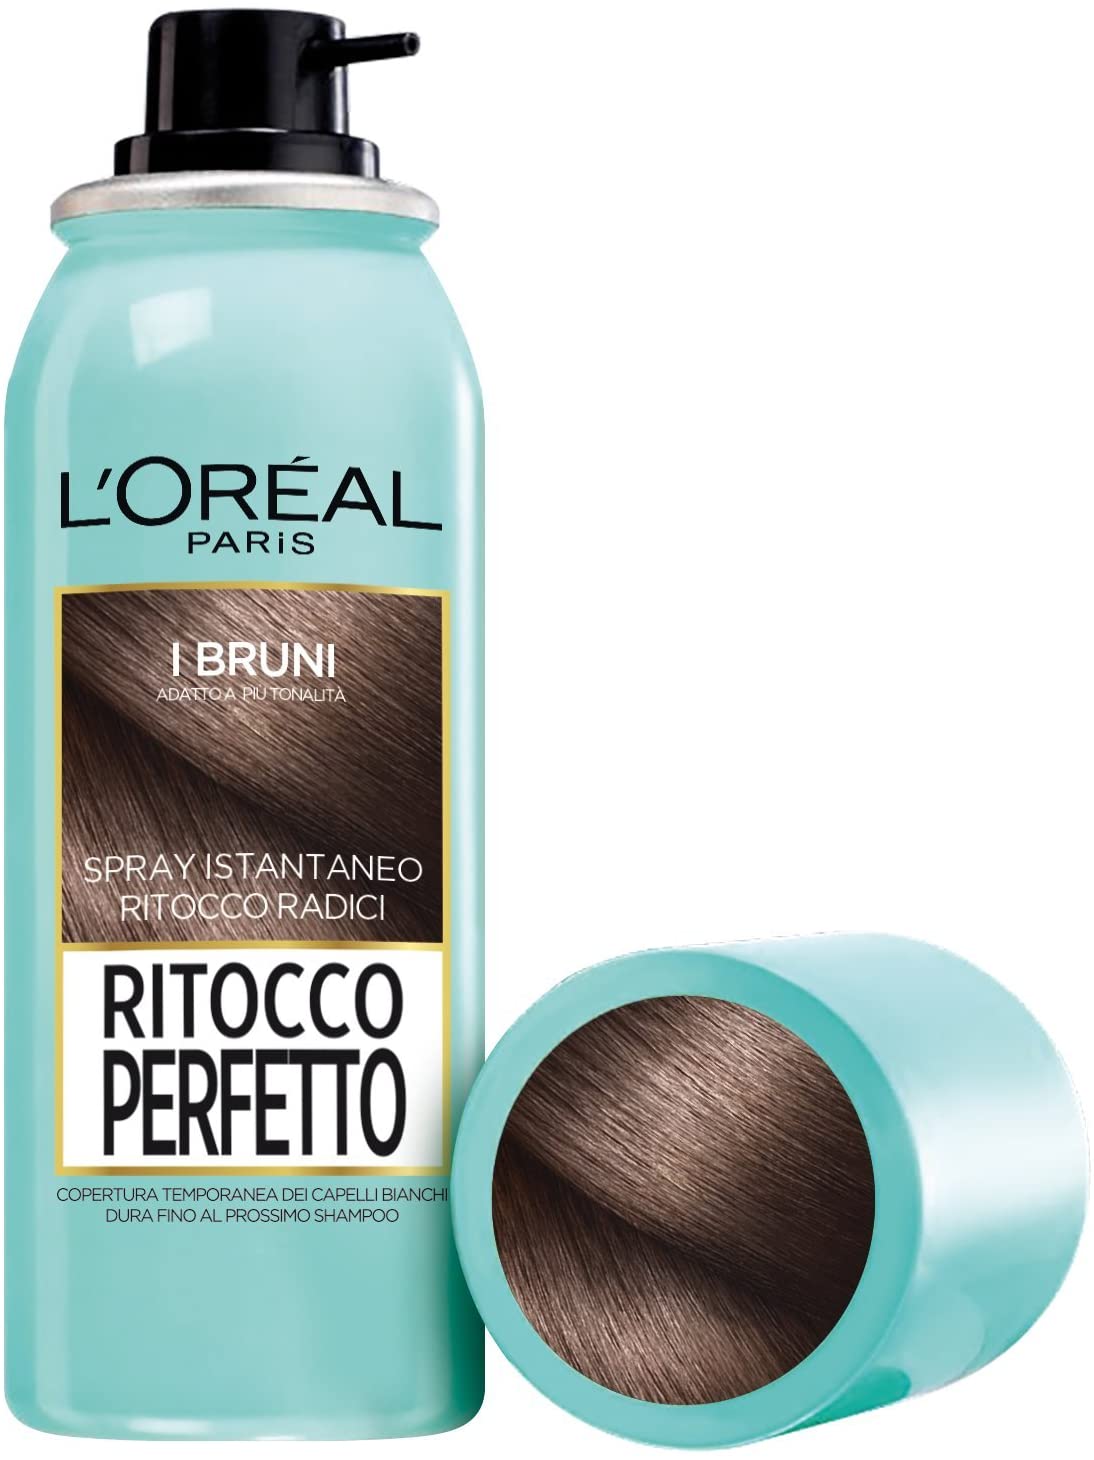 L'Oréal Paris Ritocco Perfetto Spray Ritocco Radici, Colorazione Ricrescita, Copre i Capelli Bianchi e Dura 1 Shampoo, 2 Bruno, 75 ml